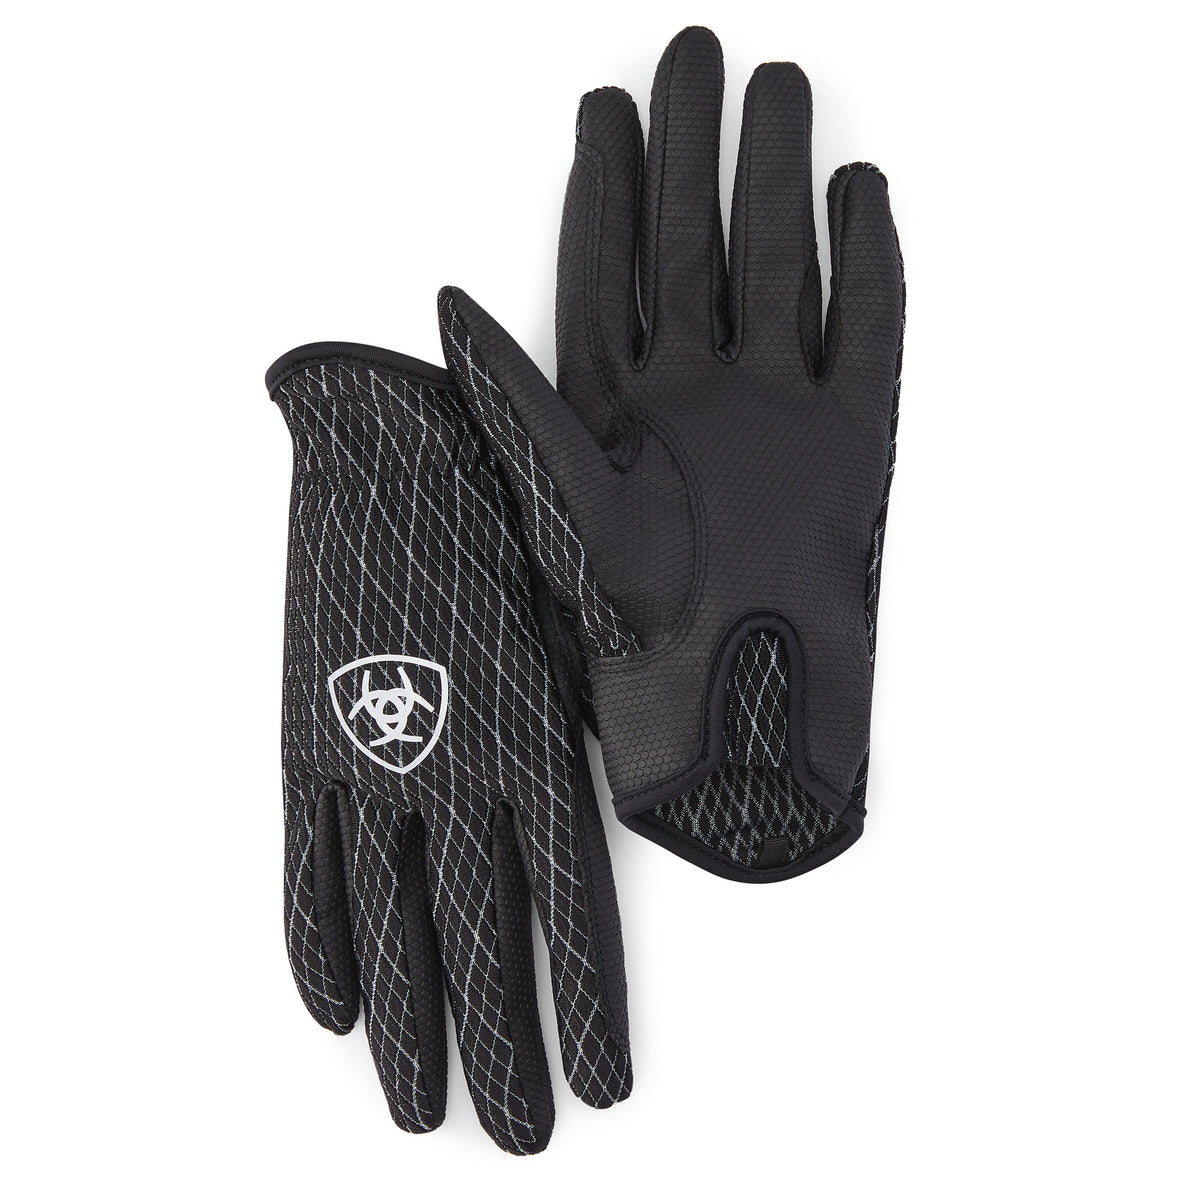 Ariat Archetype Grip Gloves 8.5